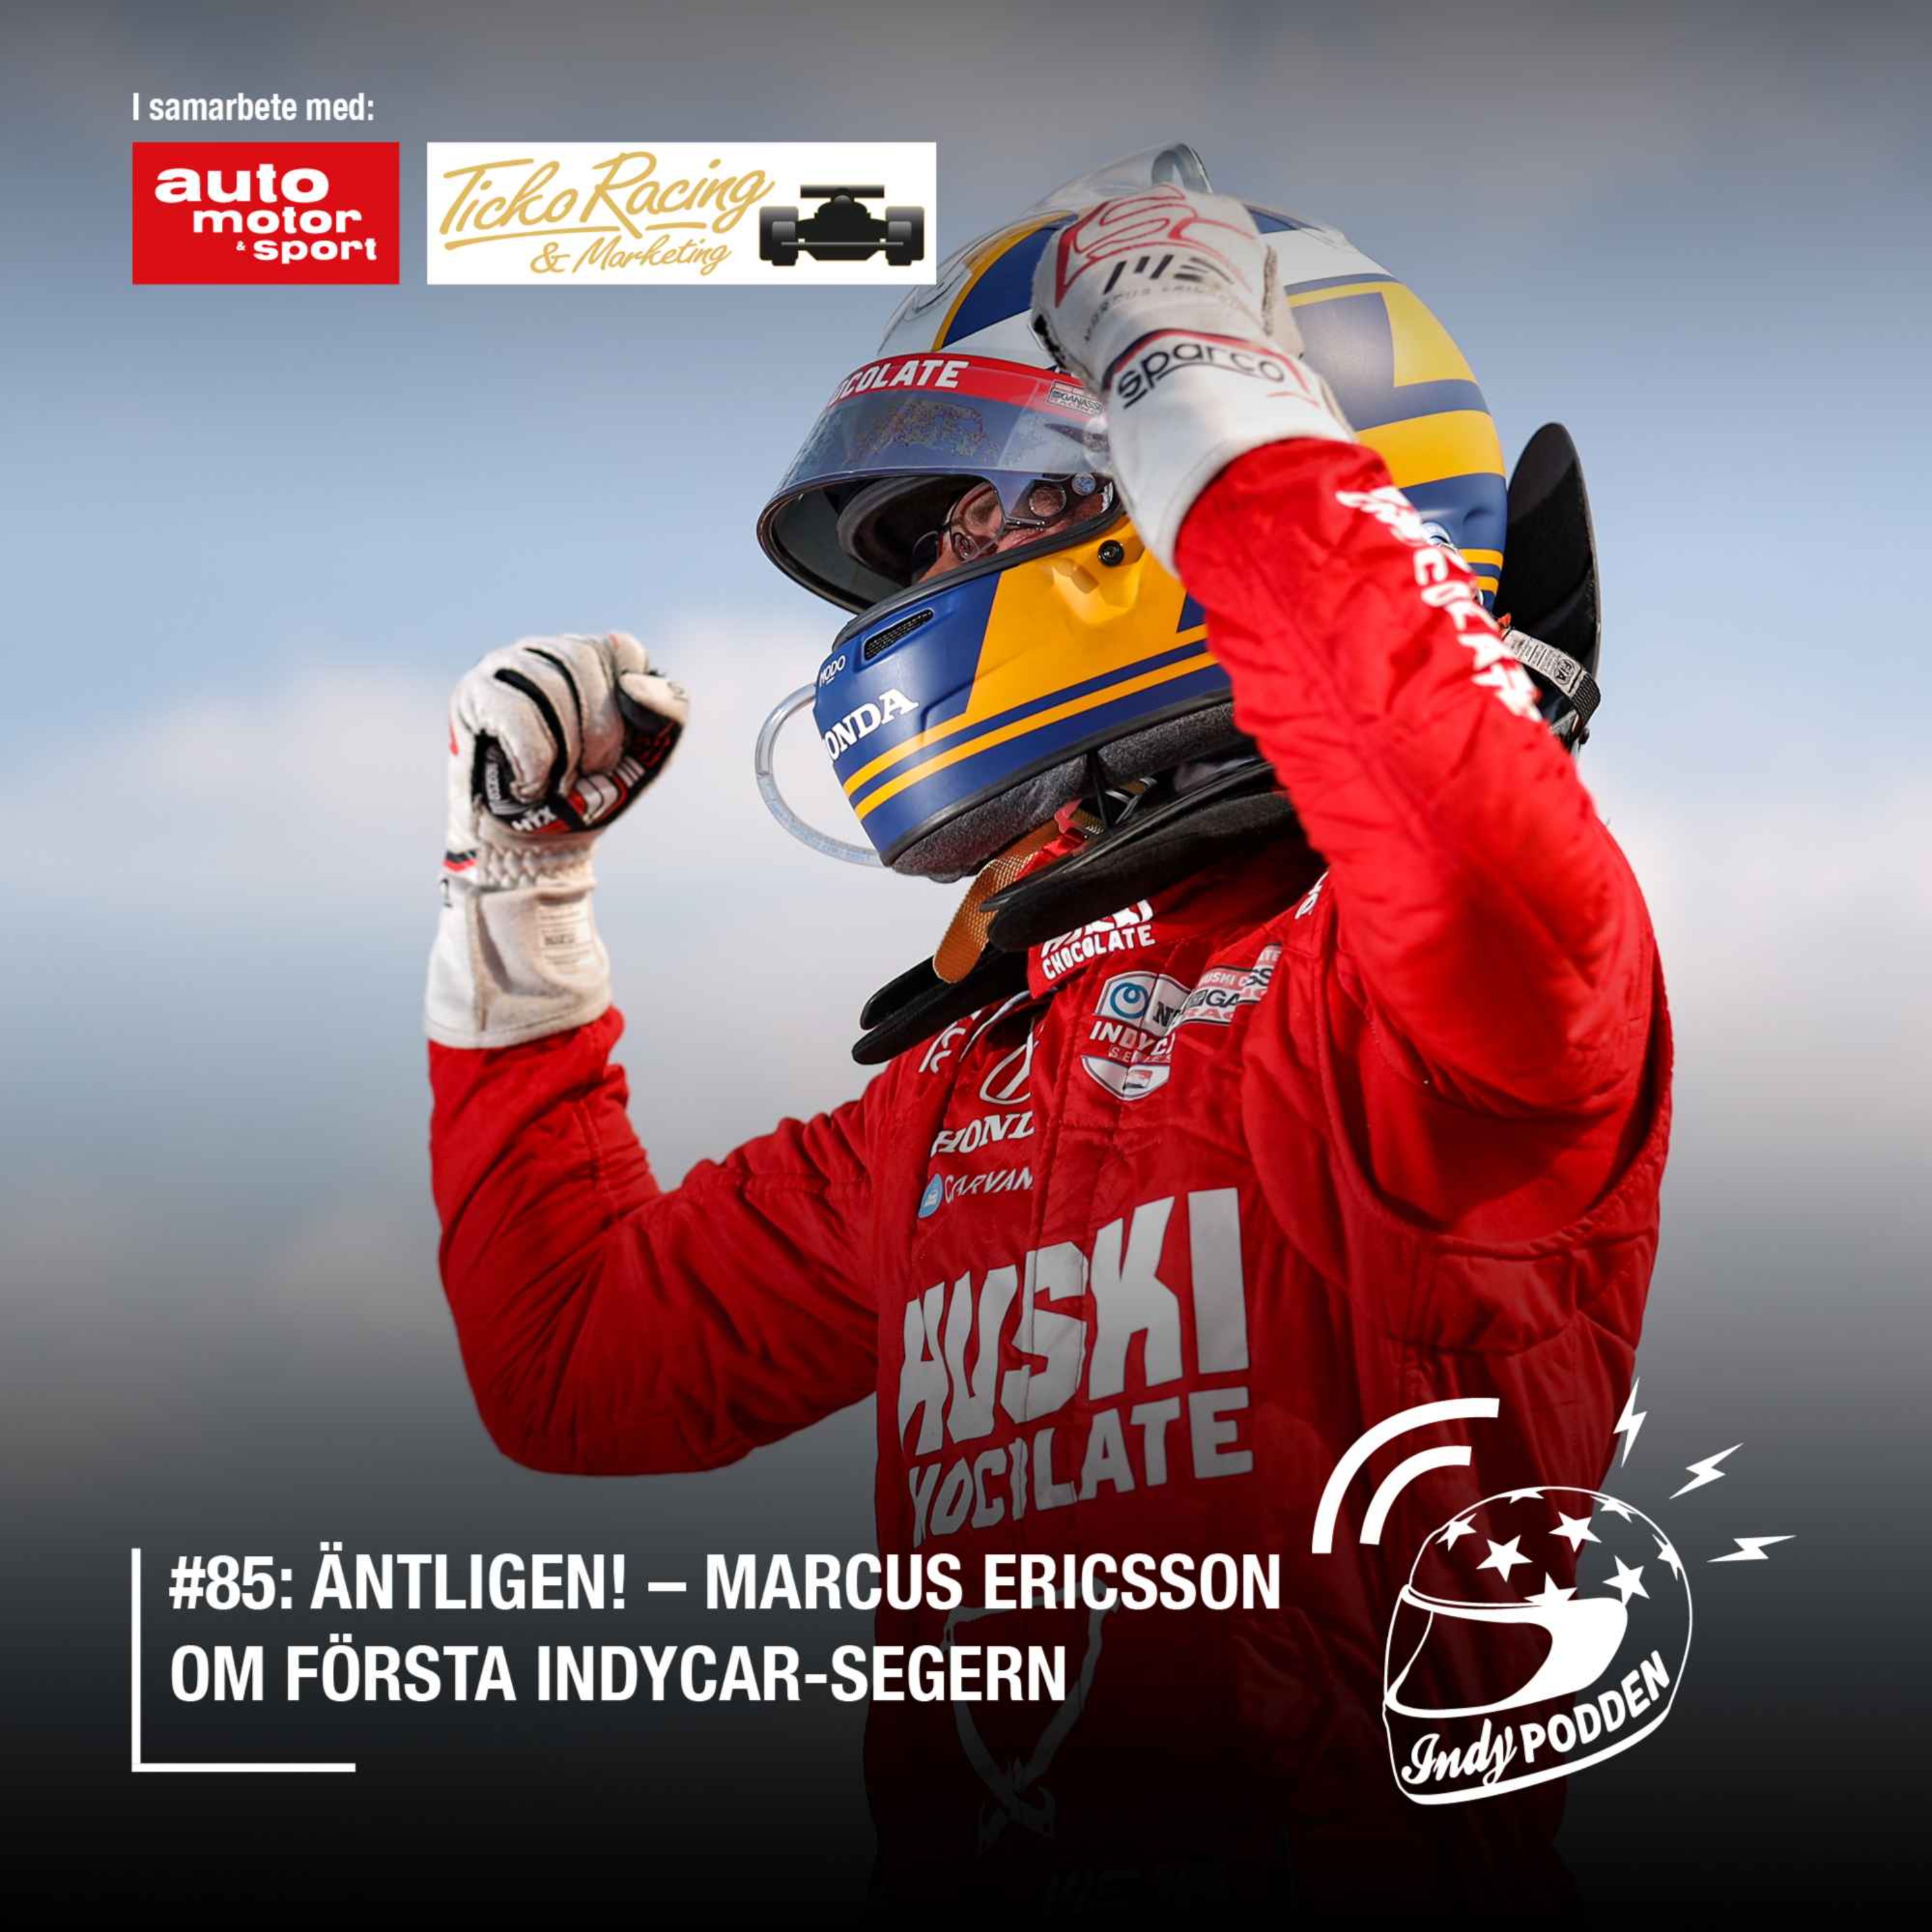 #85: Äntligen! – Marcus Ericsson om första IndyCar-segern